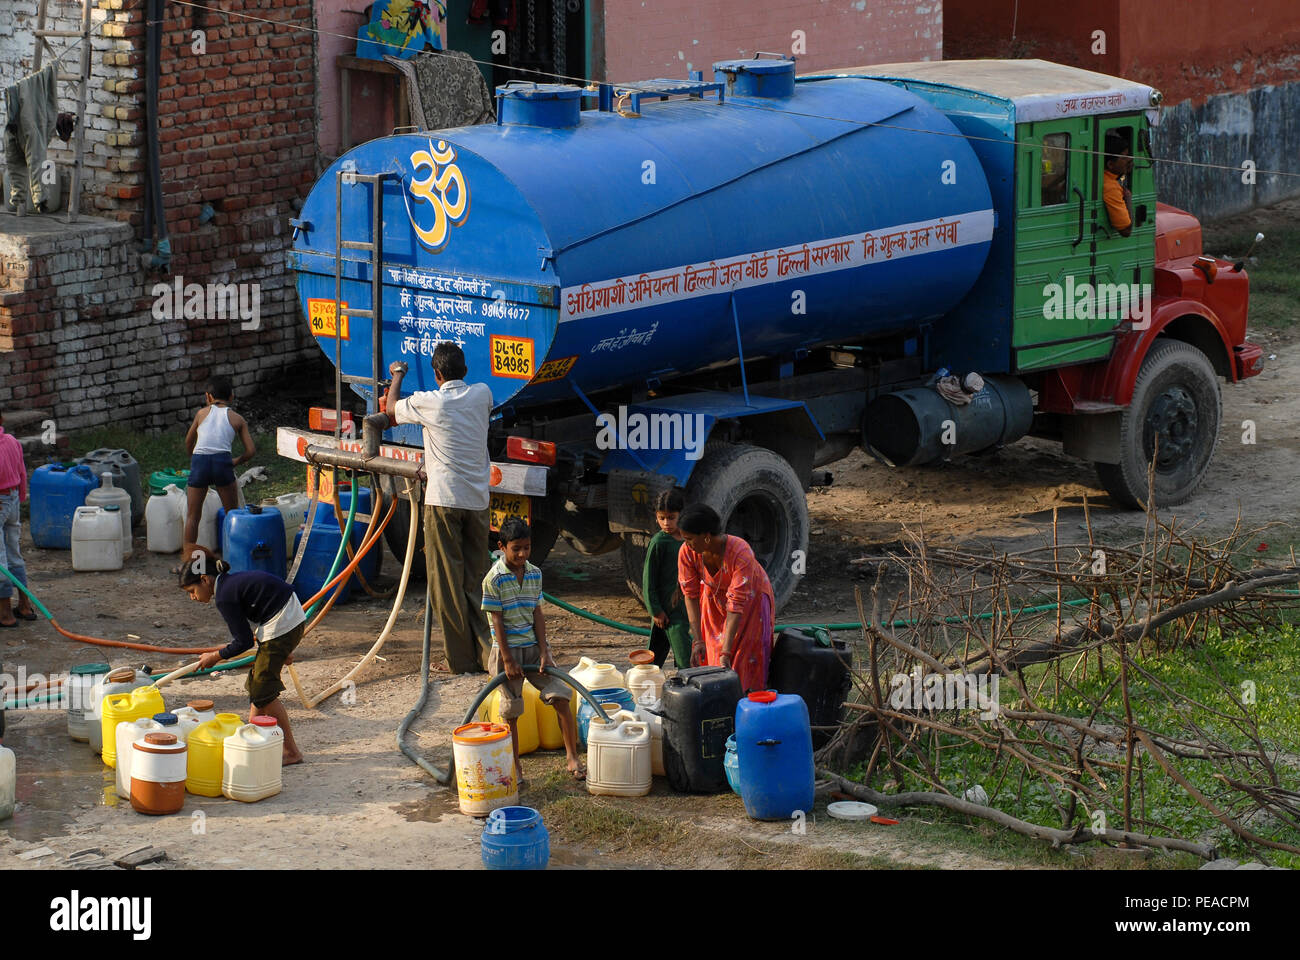 INDIA, Delhi , water supply by tank truck in slum / INDIEN, schlechte unzureichende mangelnde Wasserversorgung per Tankauto in einem Slum am Stadtrand Stock Photo